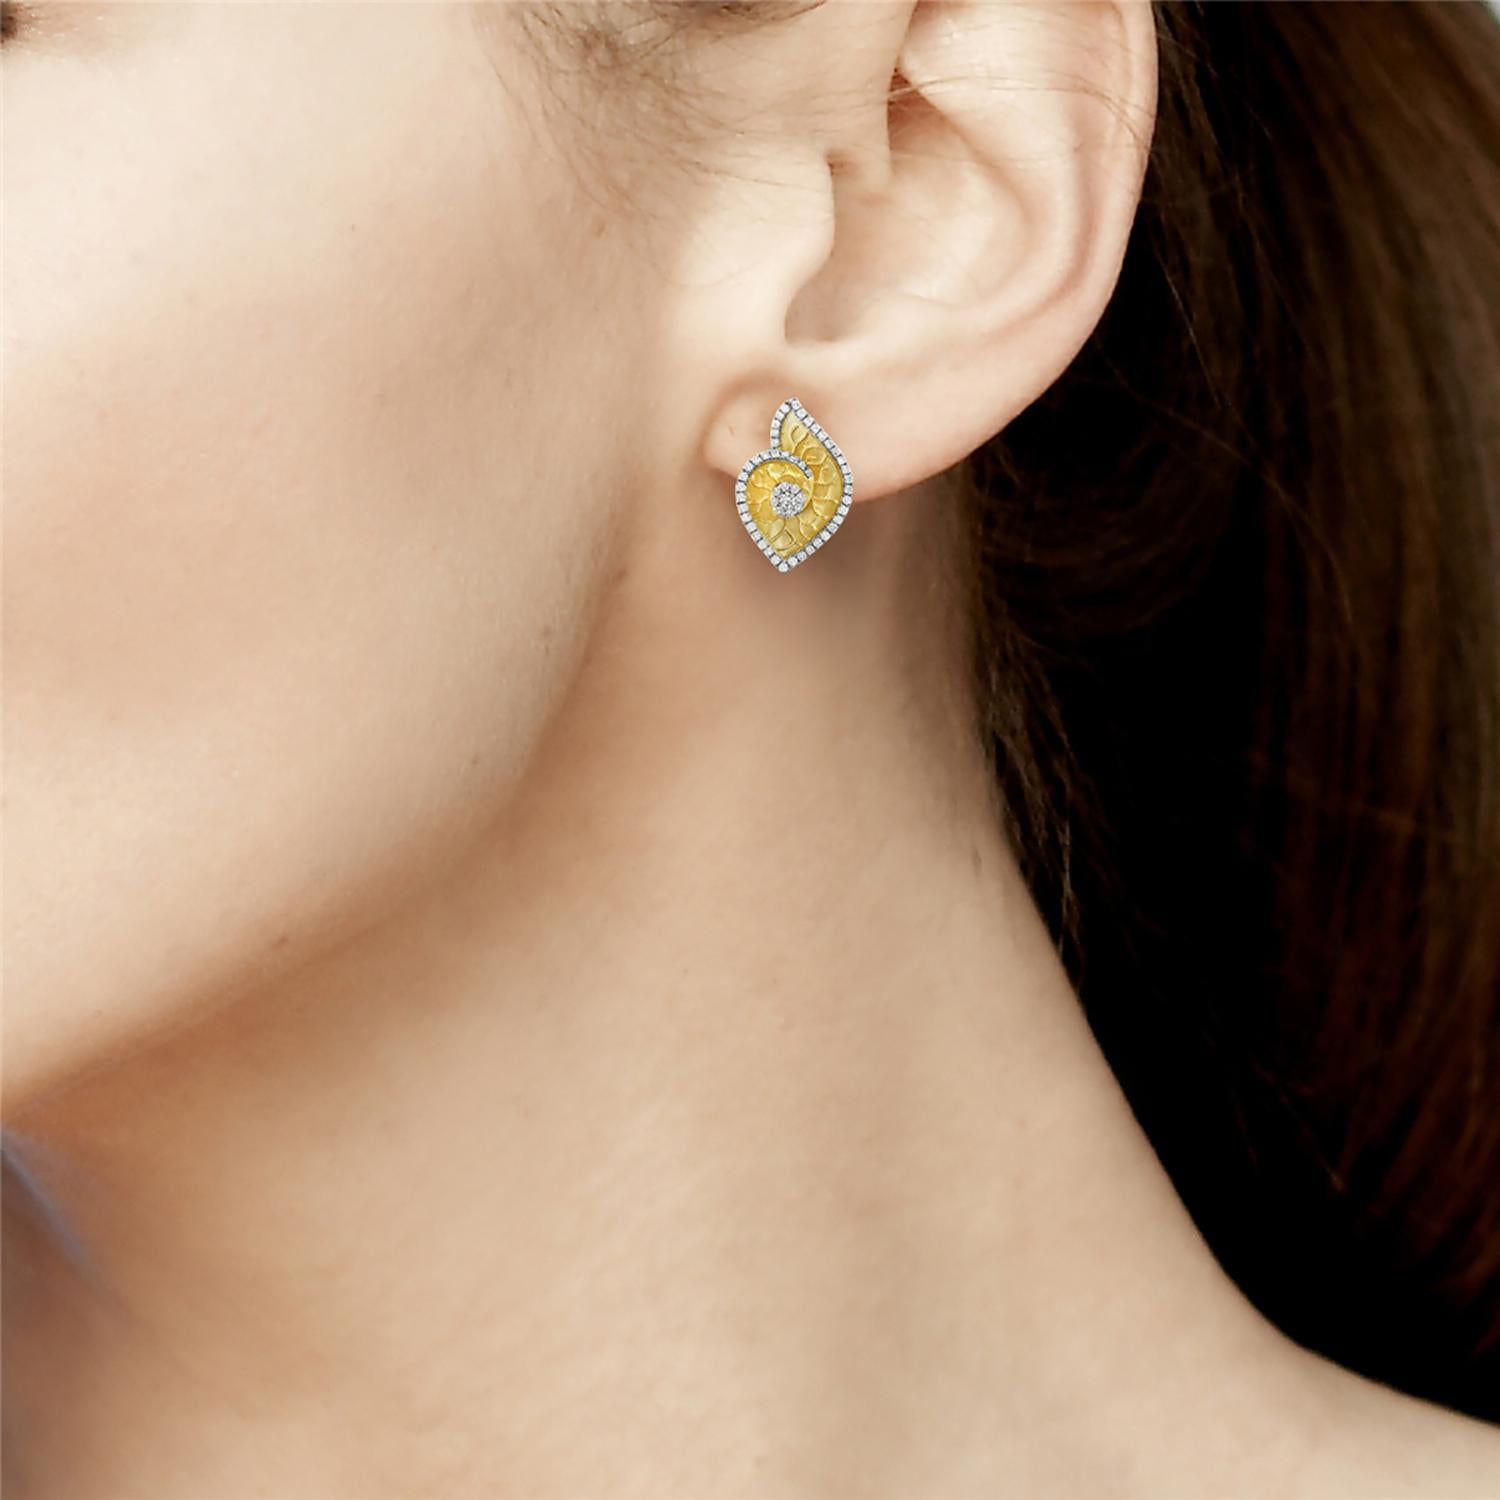 Wir stellen Ihnen unsere wunderschönen Ohrringe in Muschelform vor, die in Handarbeit aus 14-karätigem Gelbgold gefertigt und am Rand mit Diamanten verziert sind. Diese Ohrringe sind eine wunderschöne Hommage an die natürliche Schönheit des Ozeans,